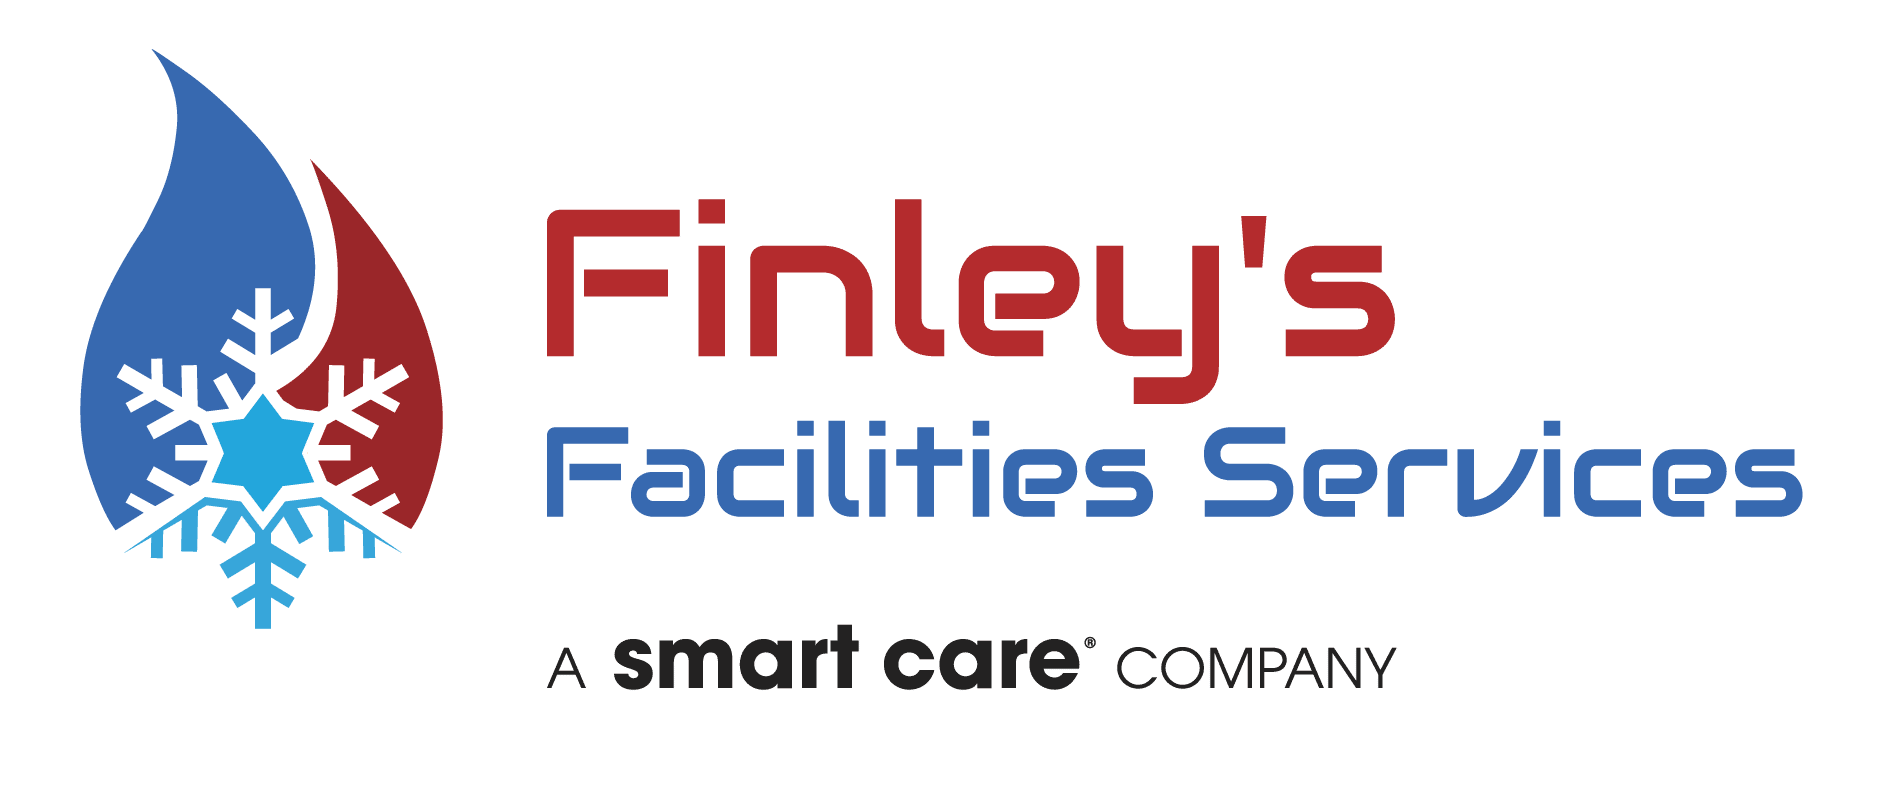 Finley’s Facilities Services